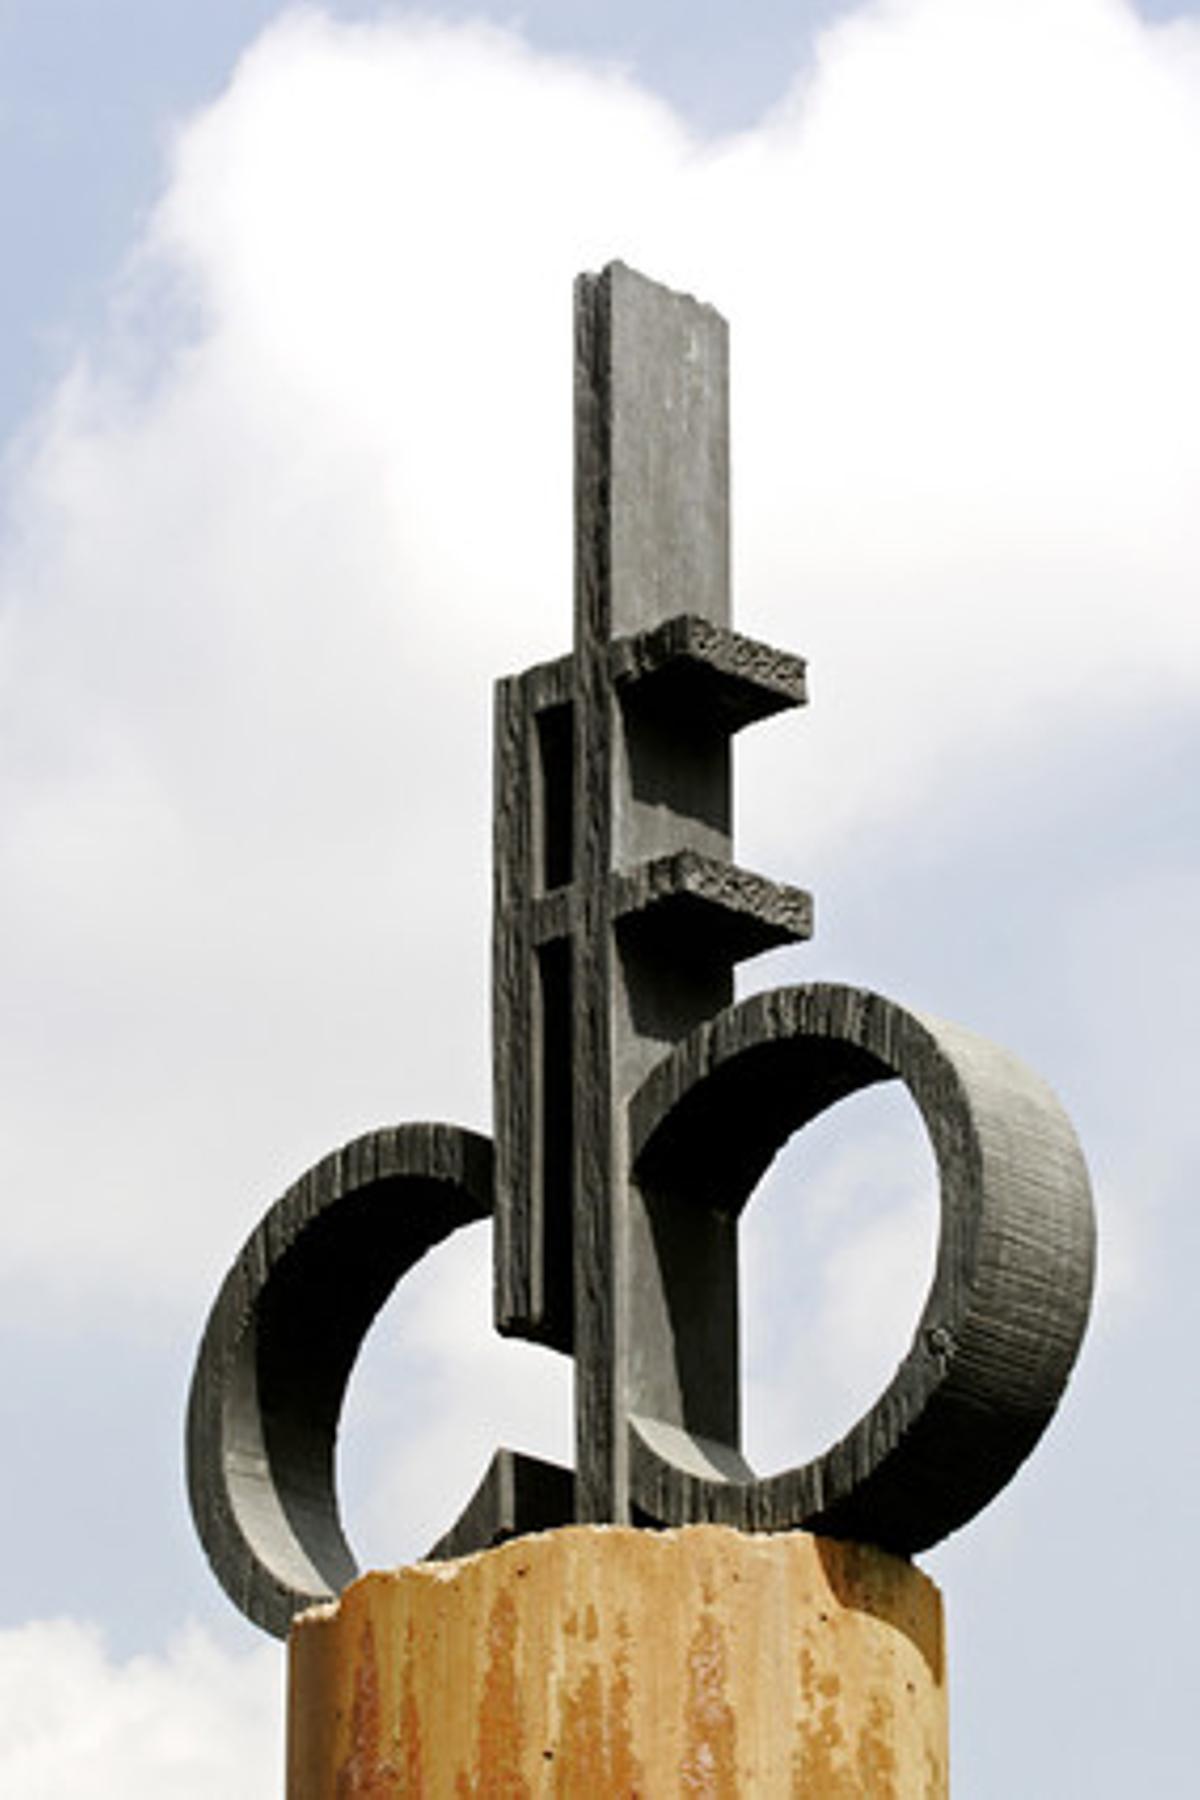 Monument als socis i a les penyes del Barça a la Masia, avinguda Joan XXIII de Barcelona. 